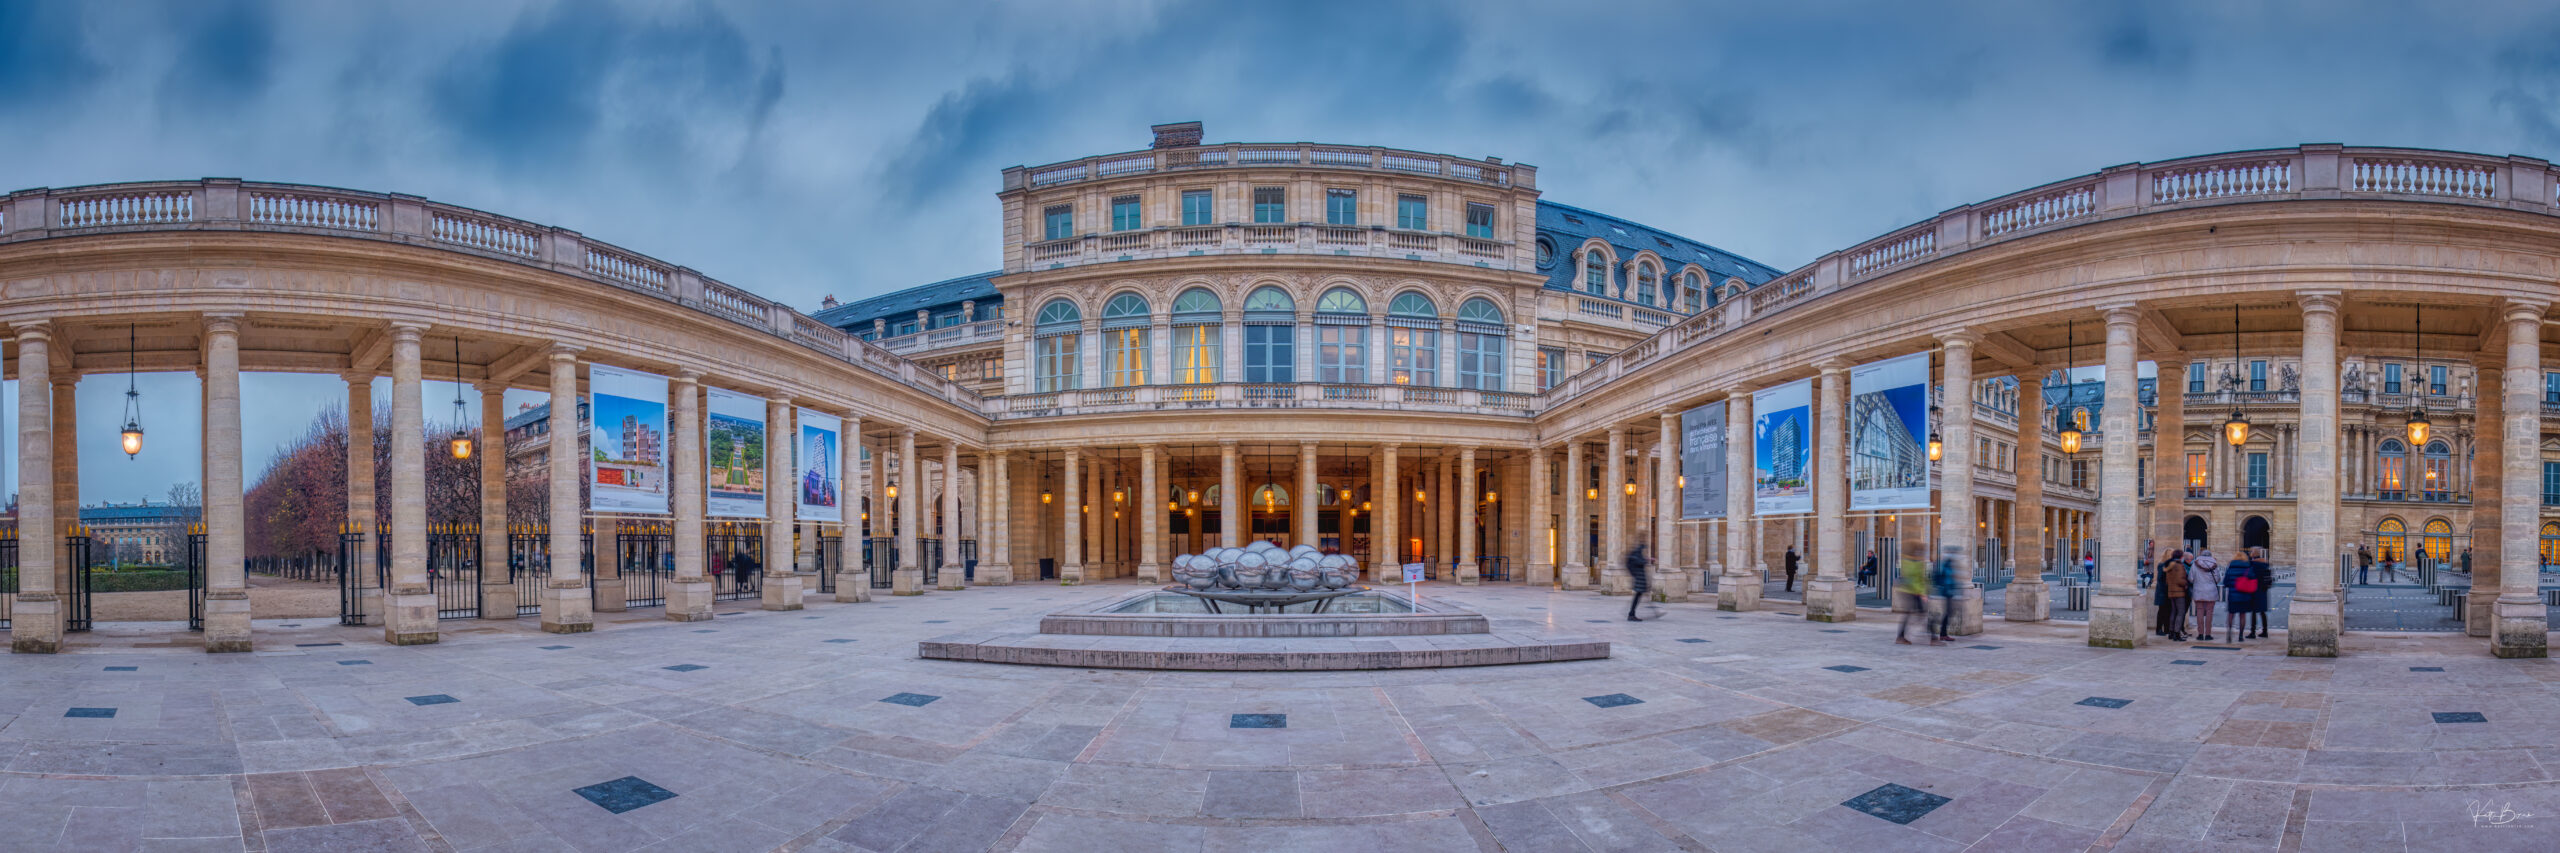 Panorama paris Palais royal